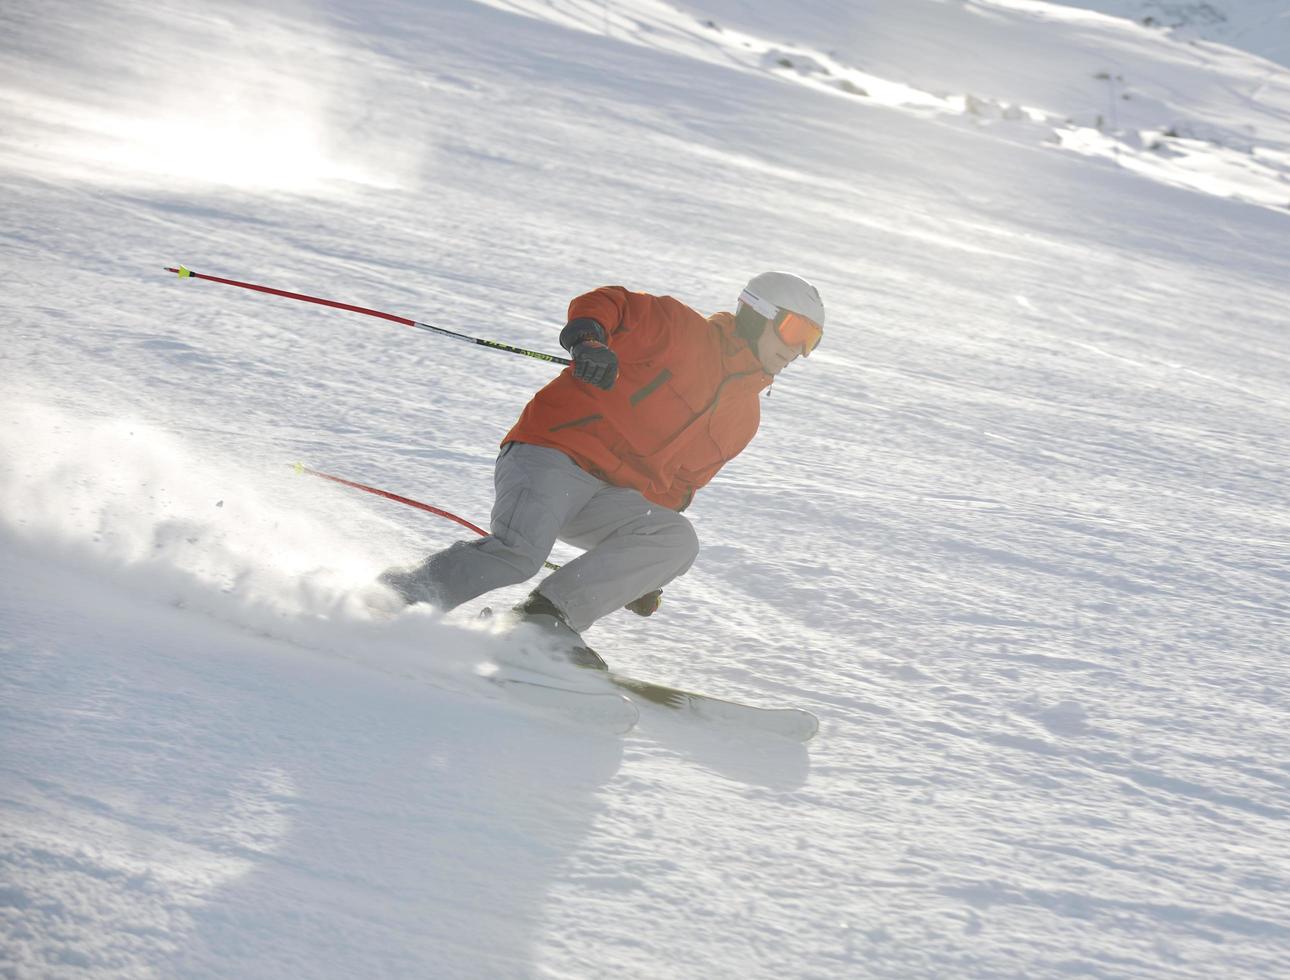 Skifahren jetzt in der Wintersaison foto